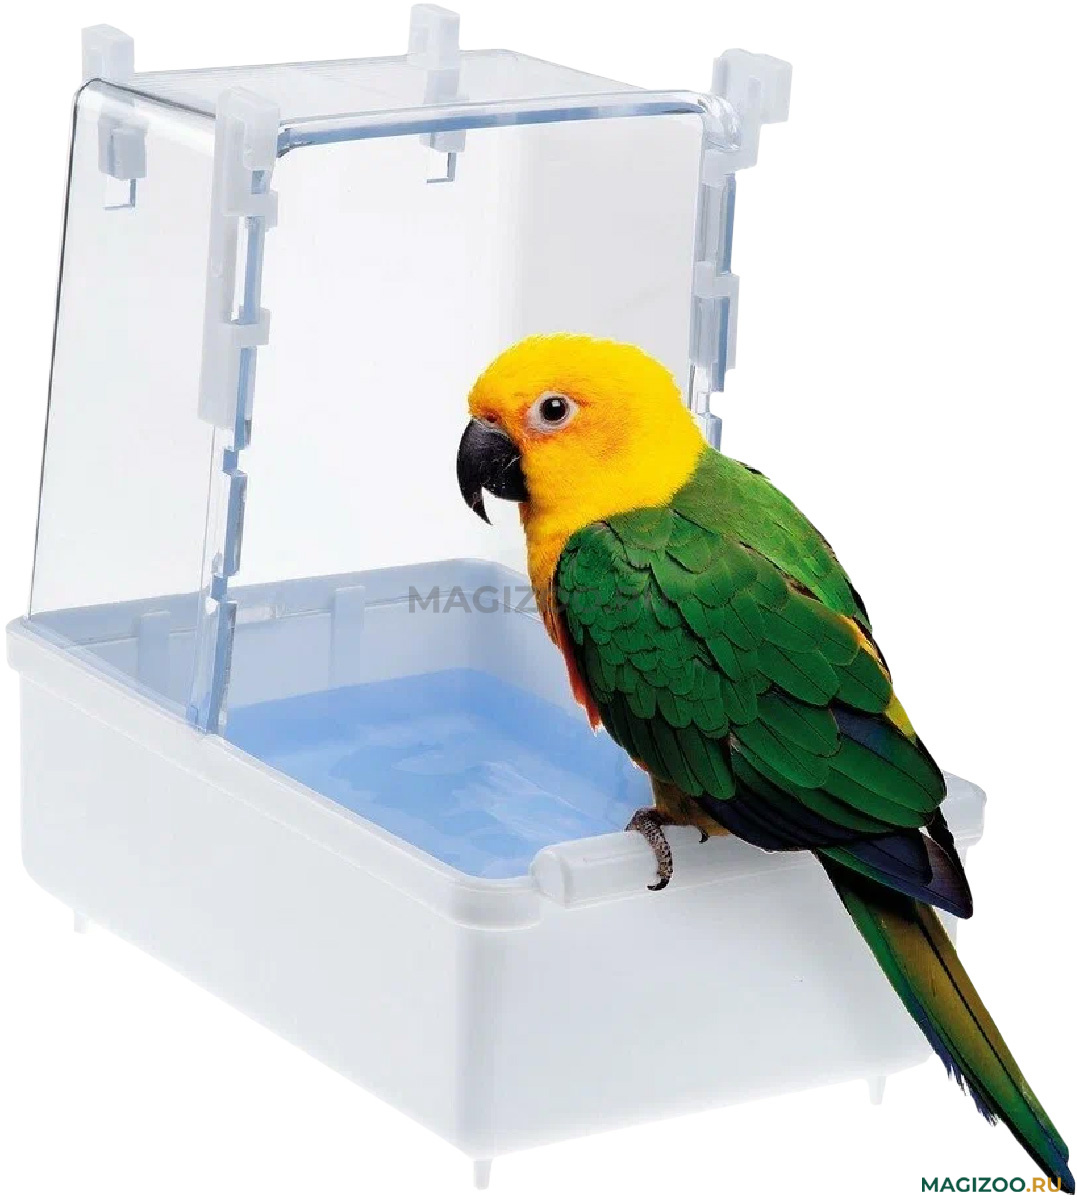 Купалка для крупных и средних попугаев Savic SPLASH GIANT